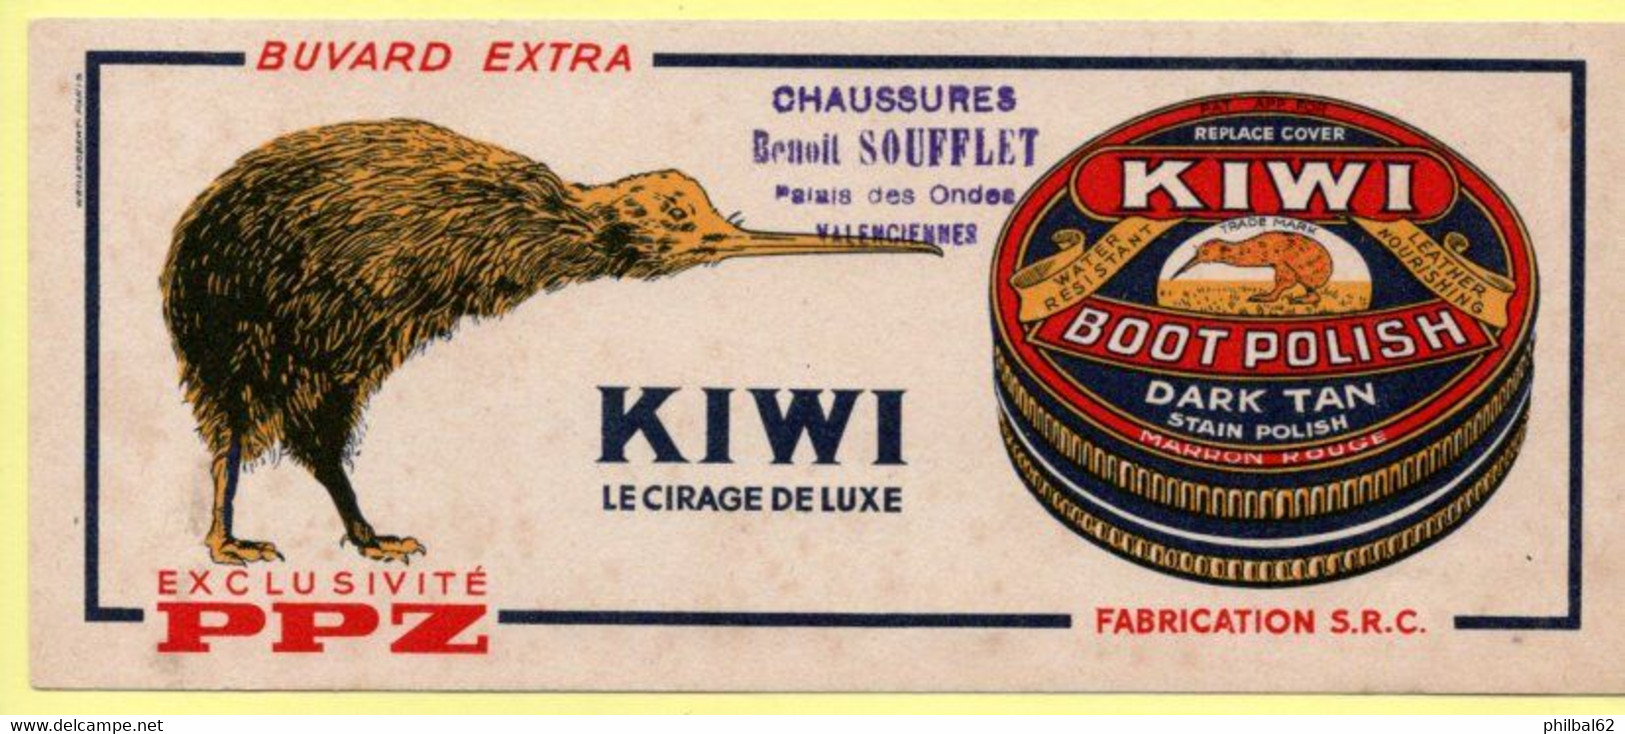 Buvard Kiwi, Le Cirage De Luxe. Cachet Chaussures Benoit Soufflet à Valenciennes. - Scarpe